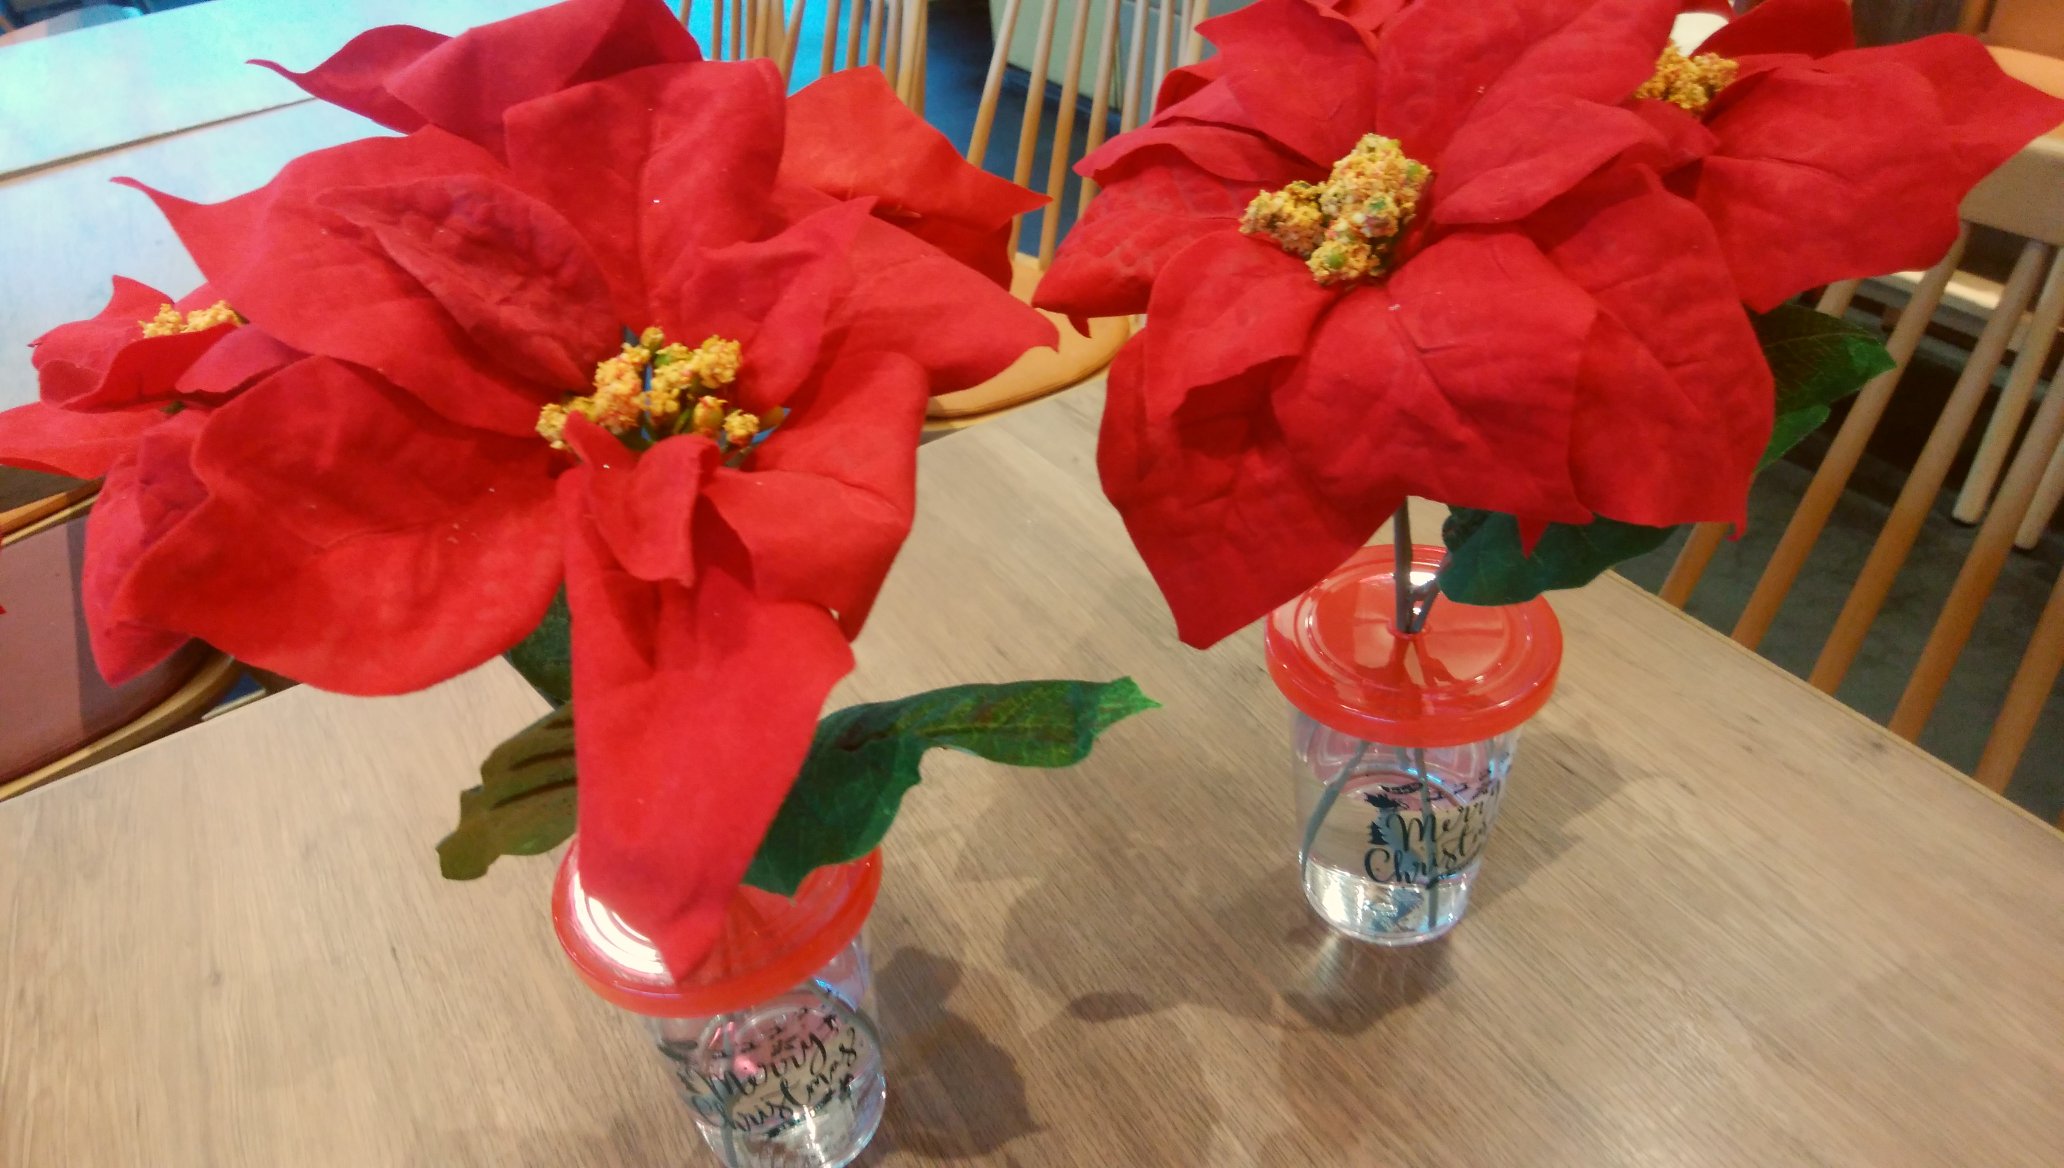 公式 沼津バーガー こんにちは ポインセチアの造花を作成 やっぱりあるとクリスマスらしくなりますね 本物っぽくお水も注入 100均で600円くらいで作成出来ました 皆さんのクリスマスディスプレイのアイディアがありましたら 是非教えて